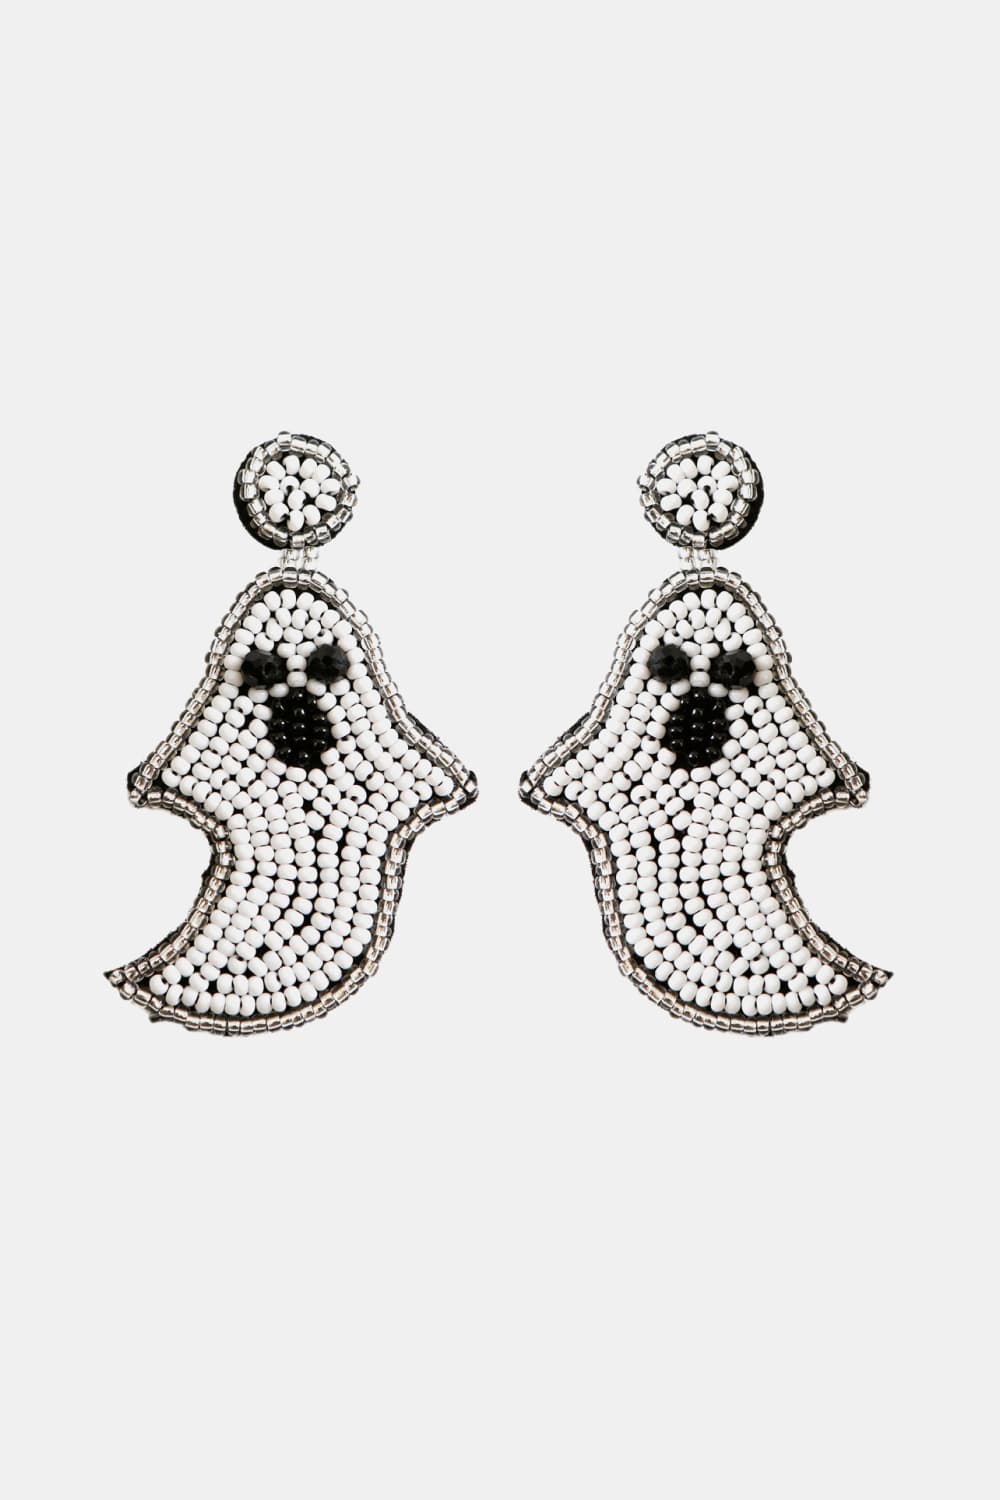 Ghost Shape Beaded Dangle Earrings - White / One Size - Women’s Jewelry - Earrings - 4 - 2024